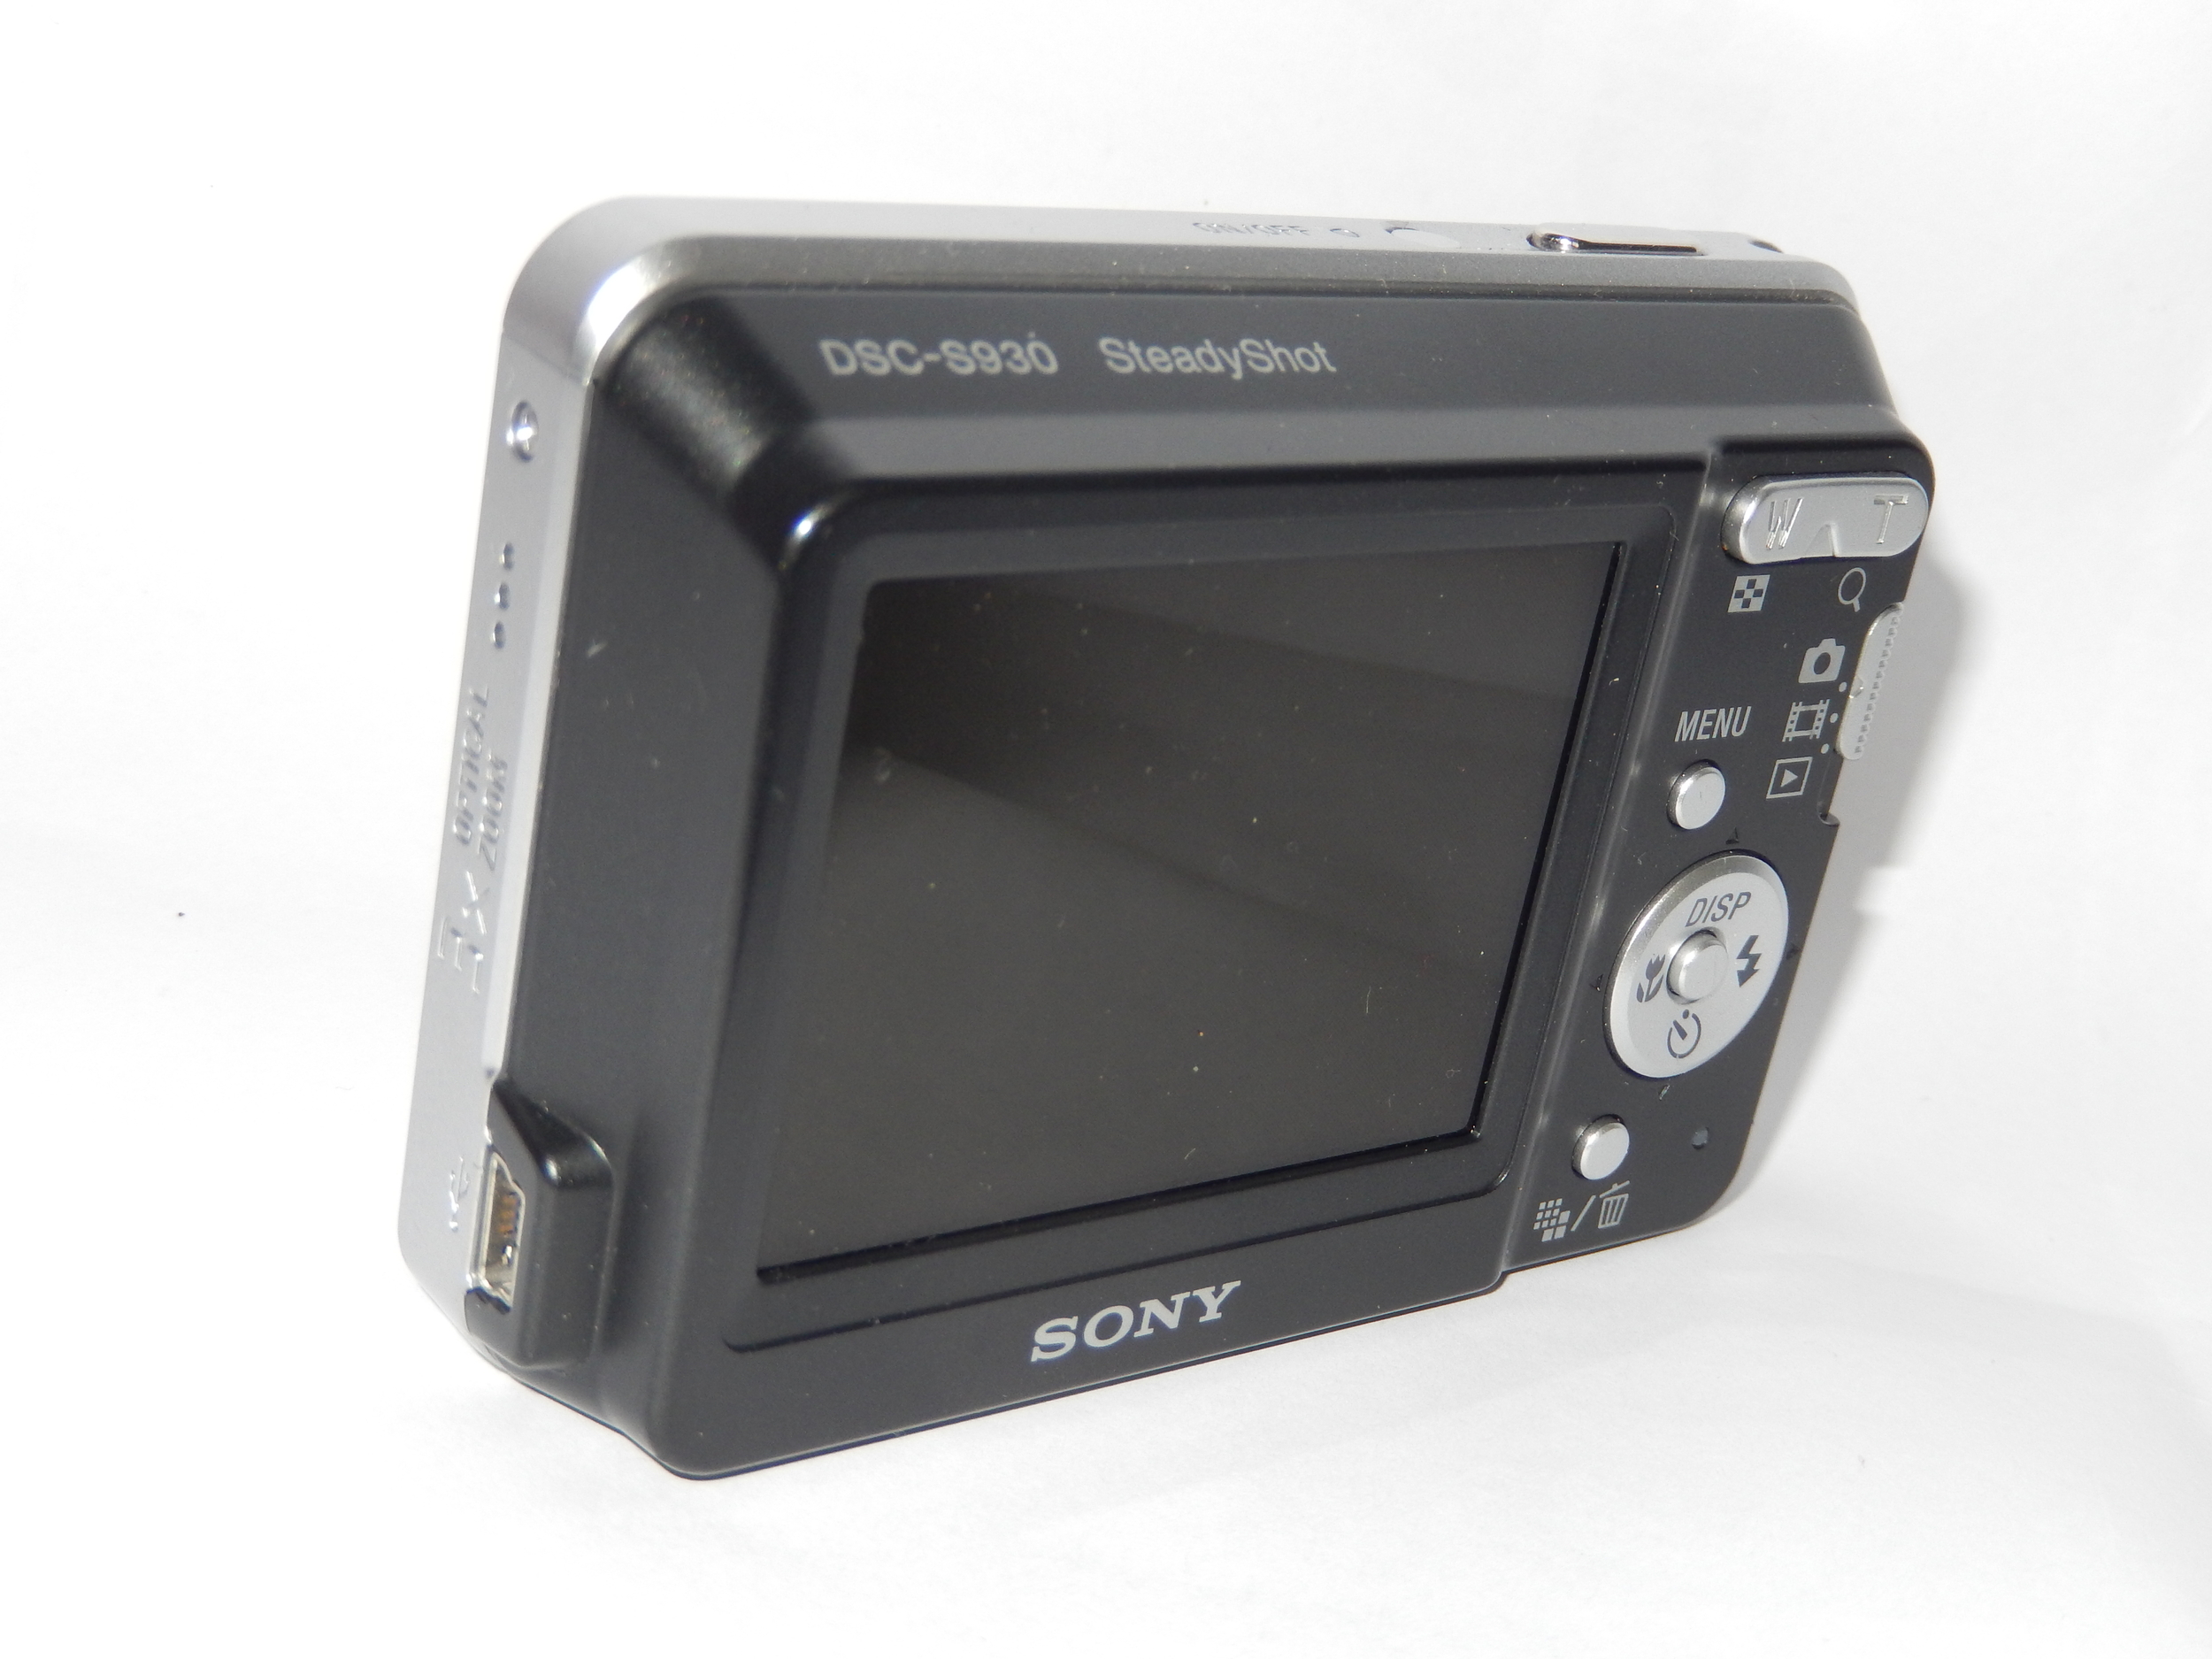 Sony Cyber-shot DSC-S930